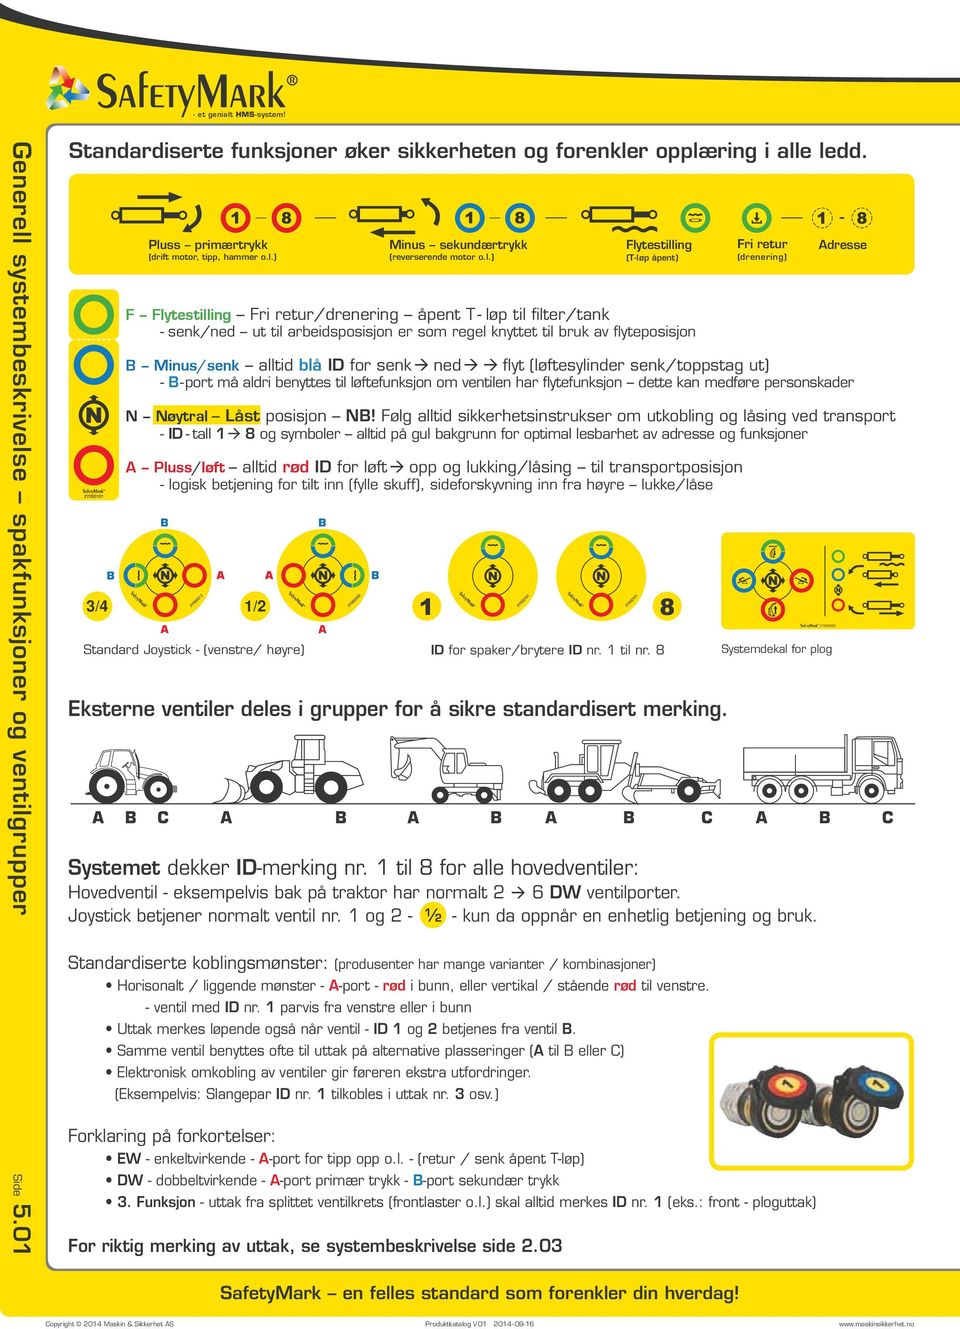 til 8 for alle hovedventiler: Hovedventil - eksempelvis bak på traktor har normalt 6 DW ventilporter. Joystick betjener normalt ventil nr. og - ½ - kun da oppnår en enhetlig betjening og bruk.